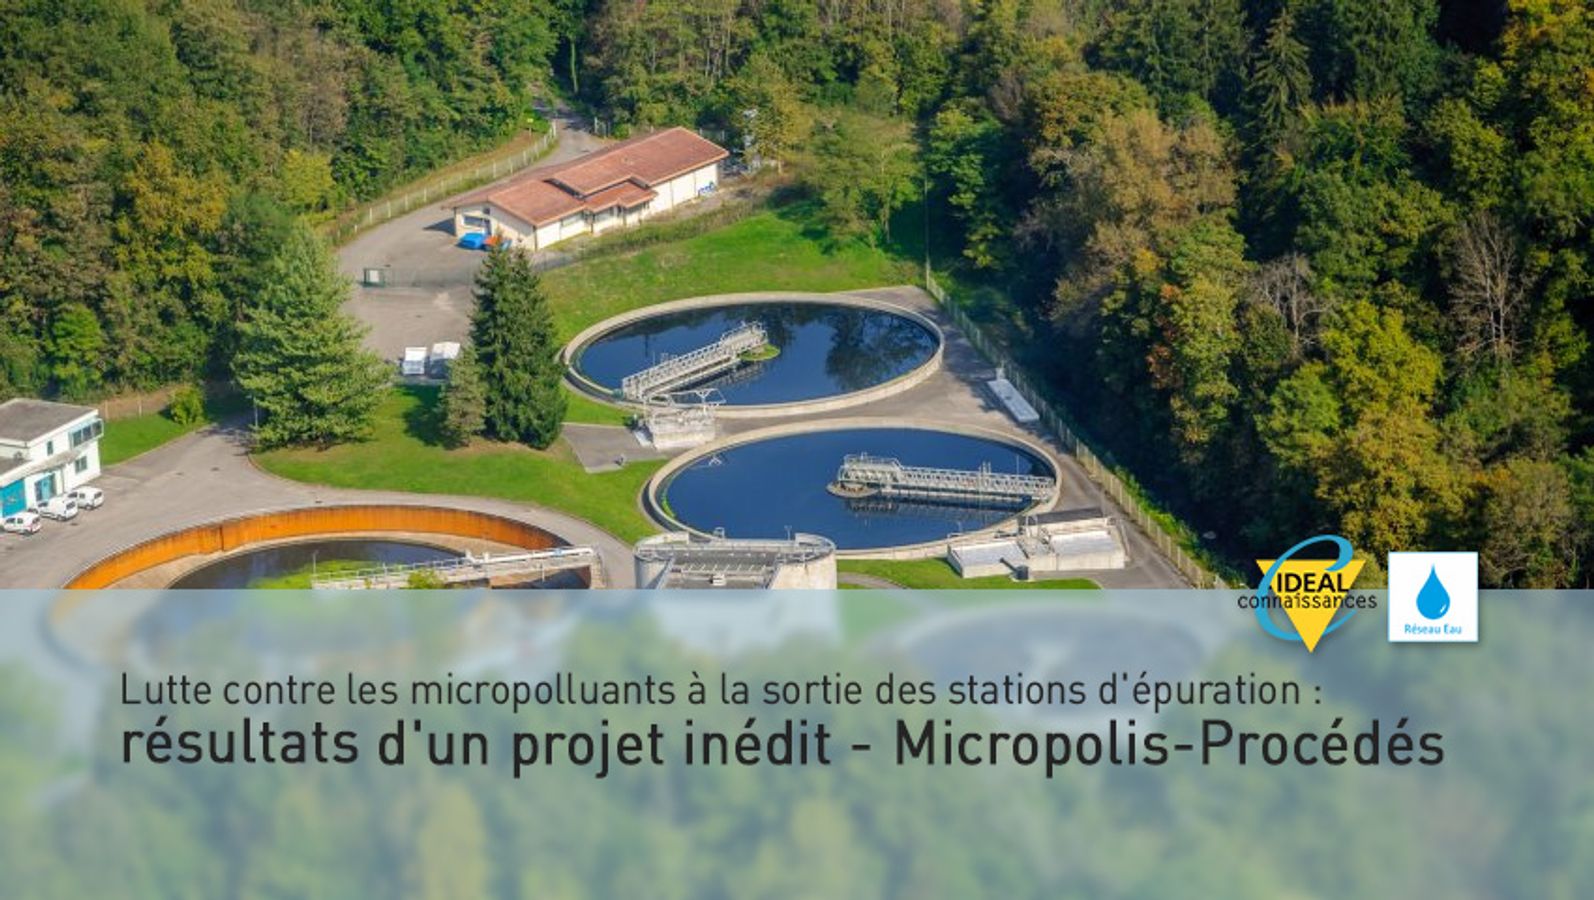 Lutte contre les micropolluants à la sortie des stations d'épuration : résultats d'un projet inédit - Micropolis-Procédés